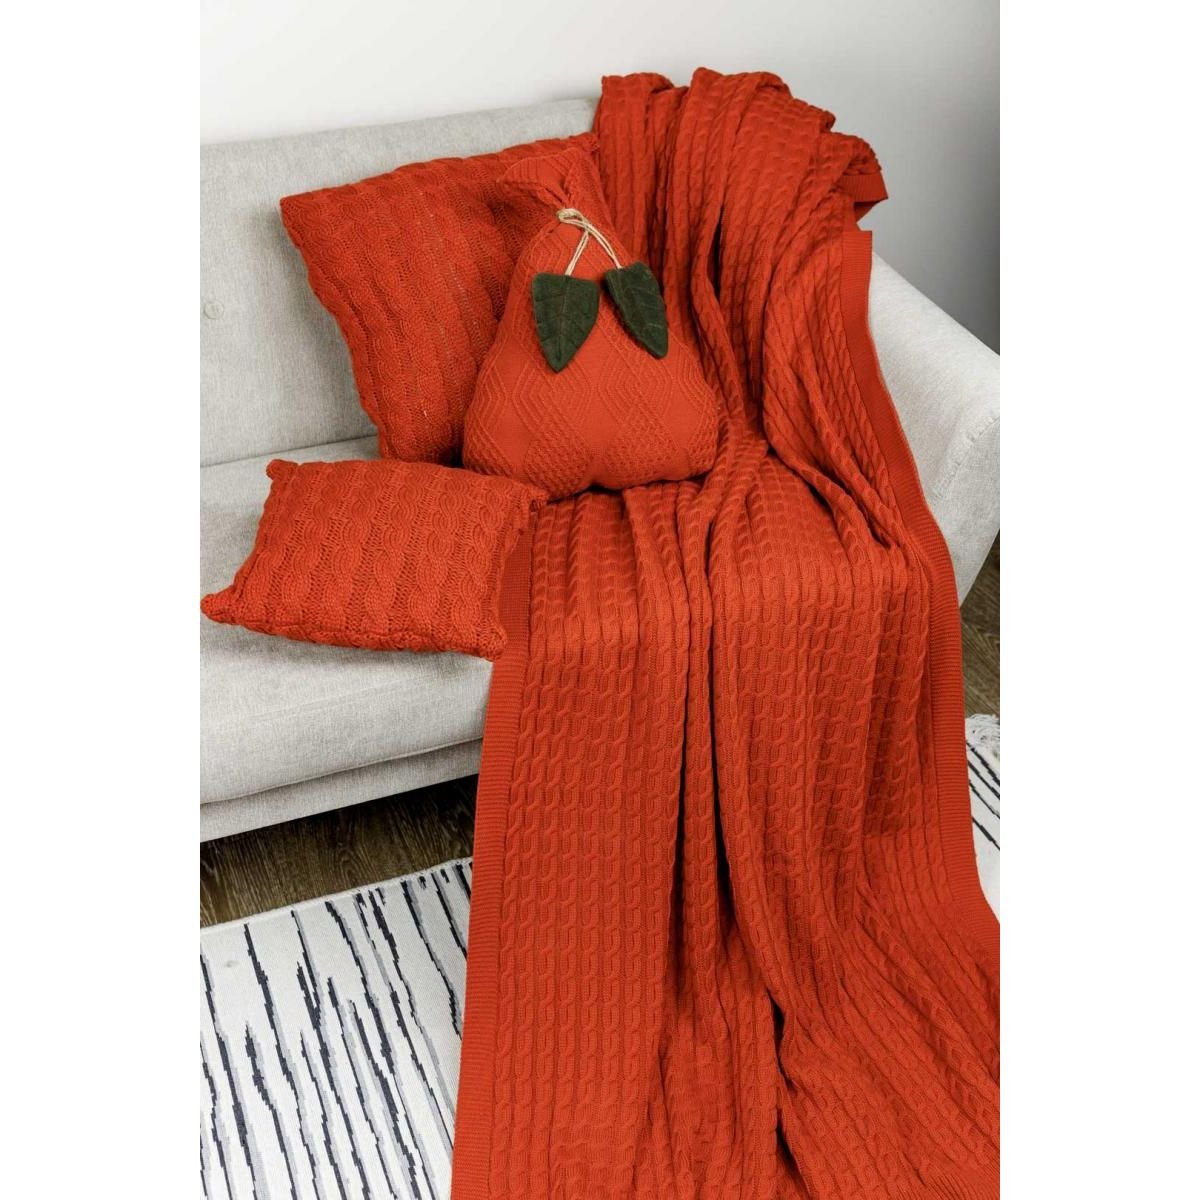 Декоративний текстильний виріб Прованс Подушка-груша, помаранчева, 40 см (30785) - фото 2